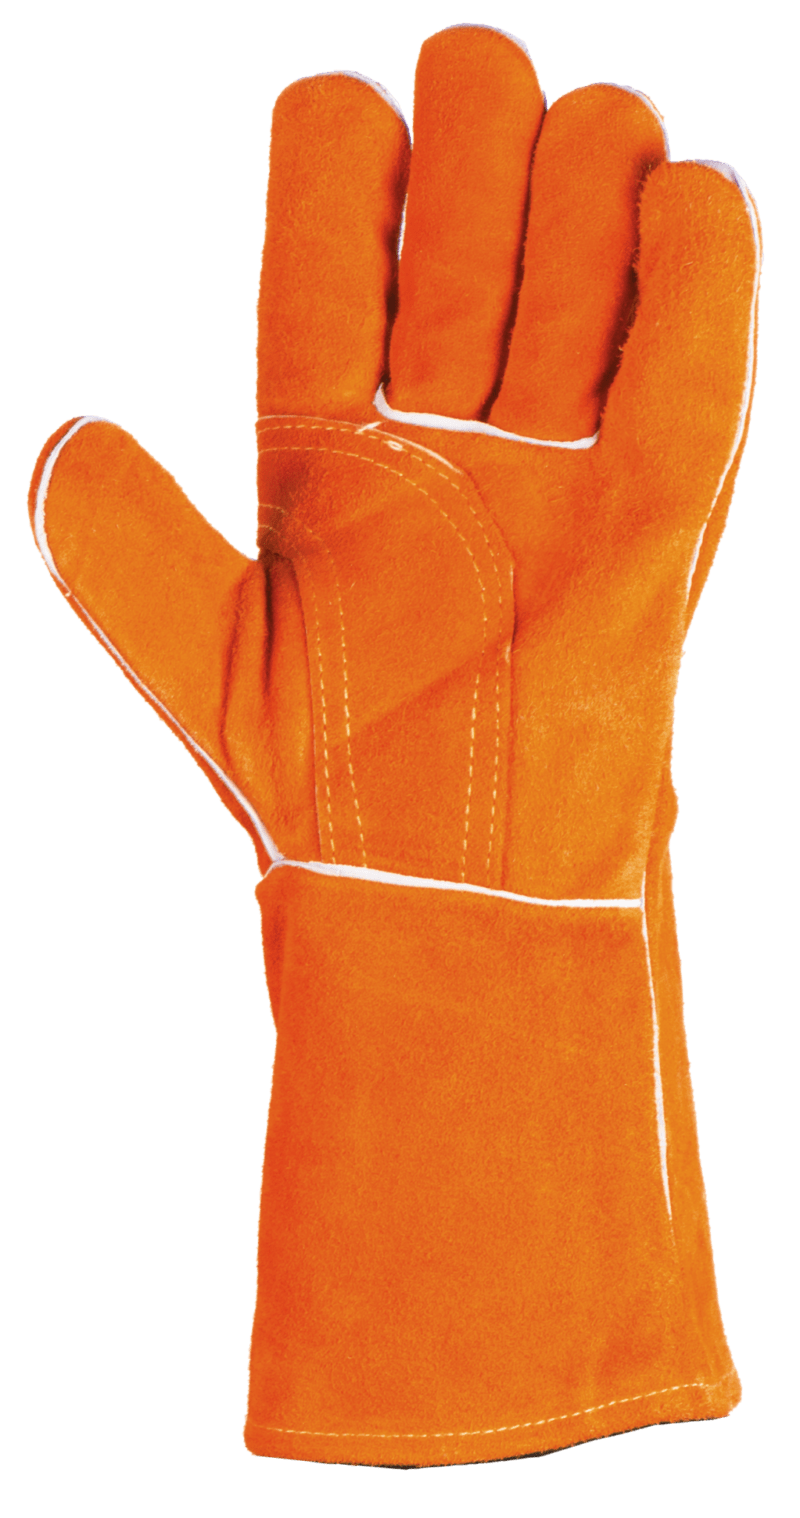 gant soudeur orange